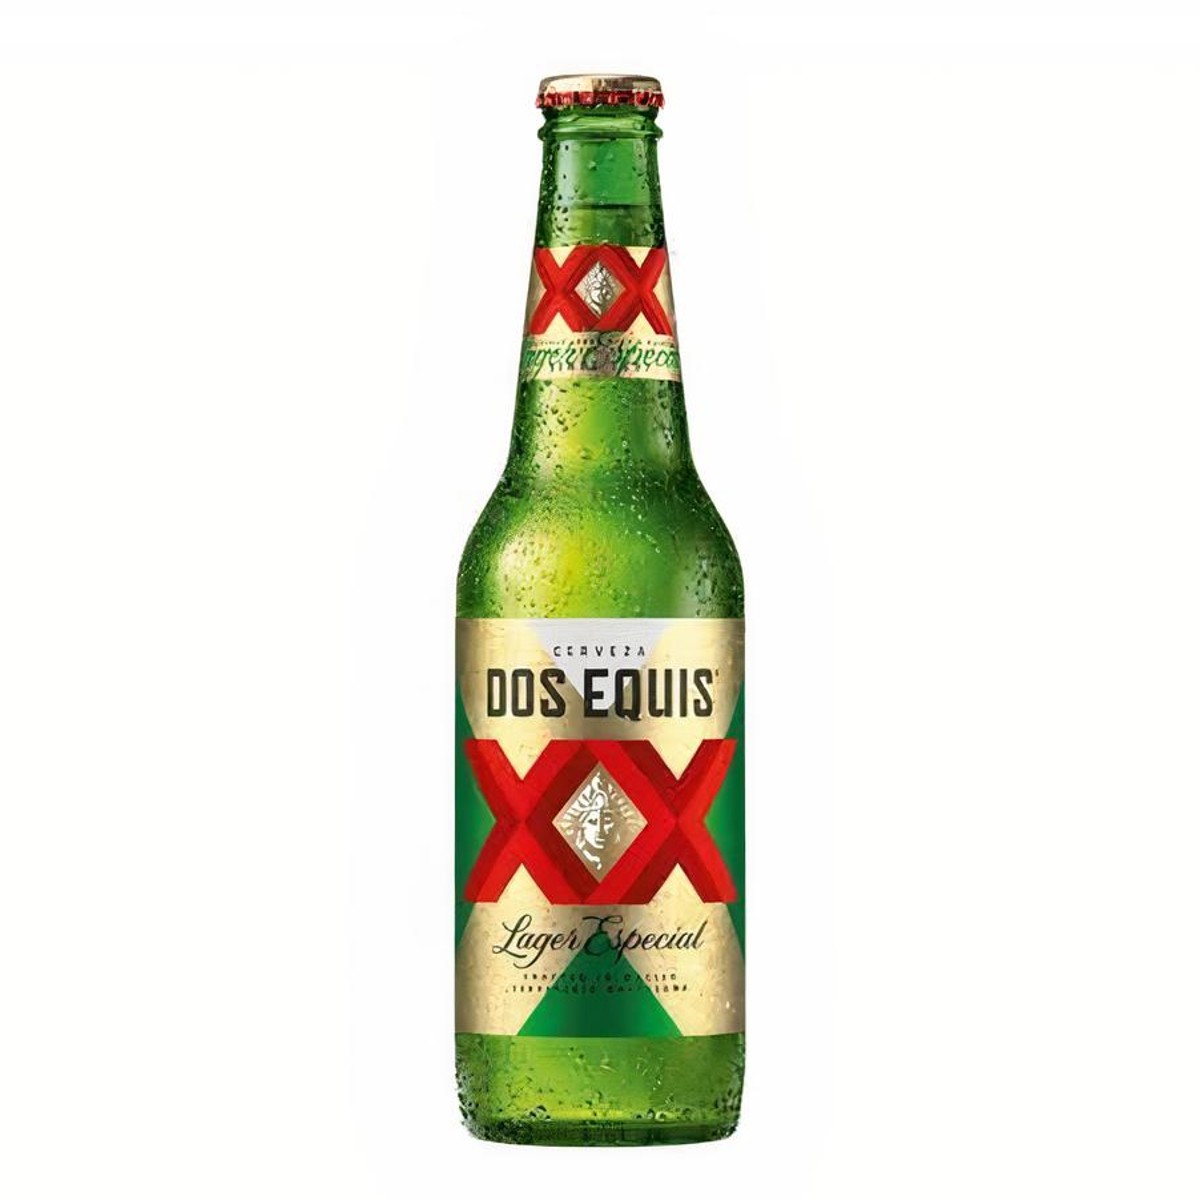 Bundaberg Ginger Beer Non-Alcoholic Zero 0% 12x 375ml Bottles Non